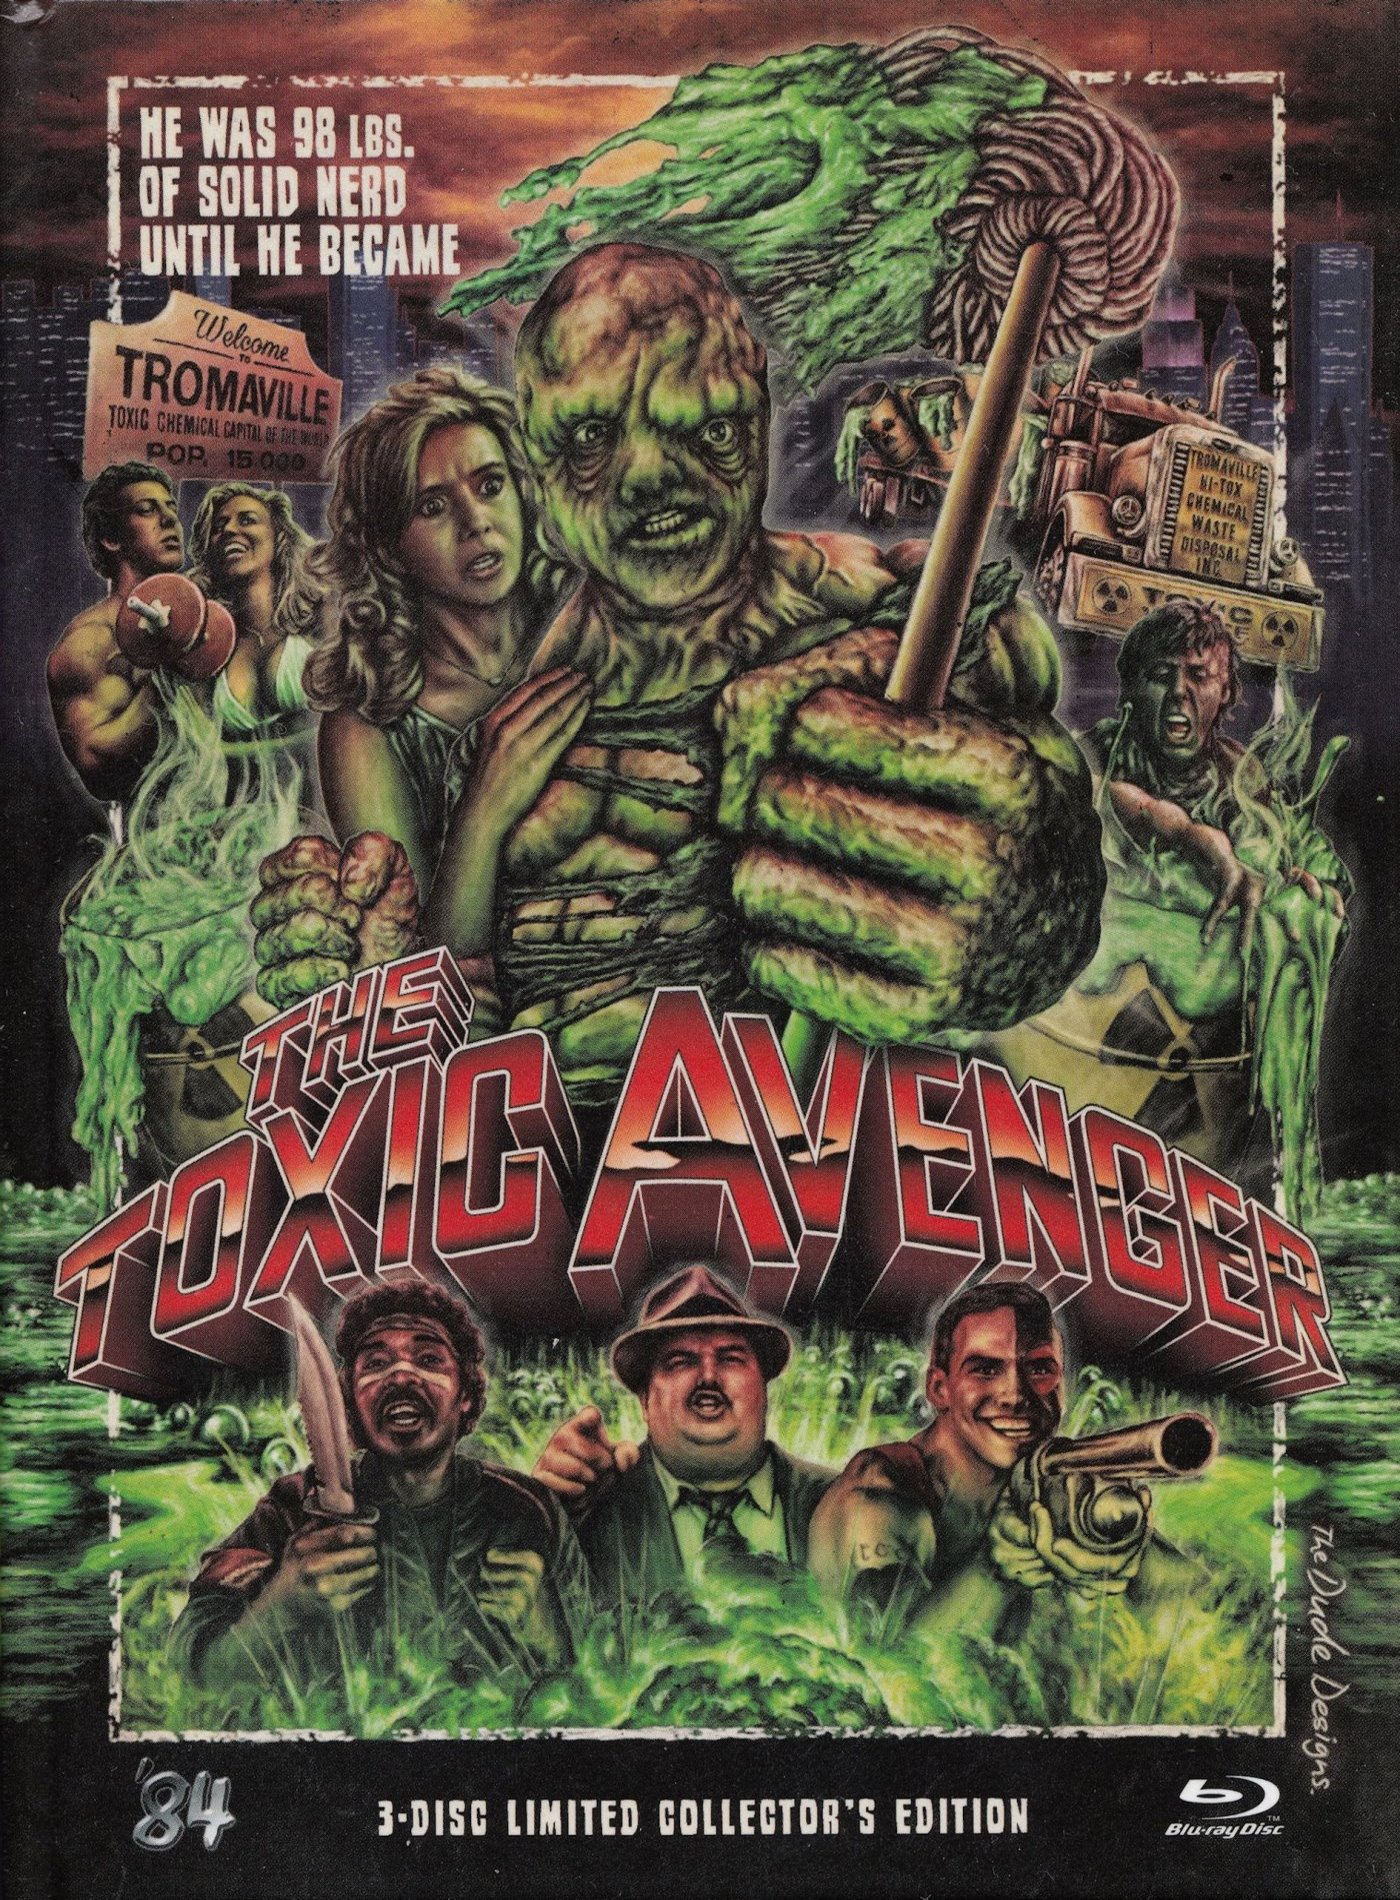 Cover - The Toxic Avenger.jpg